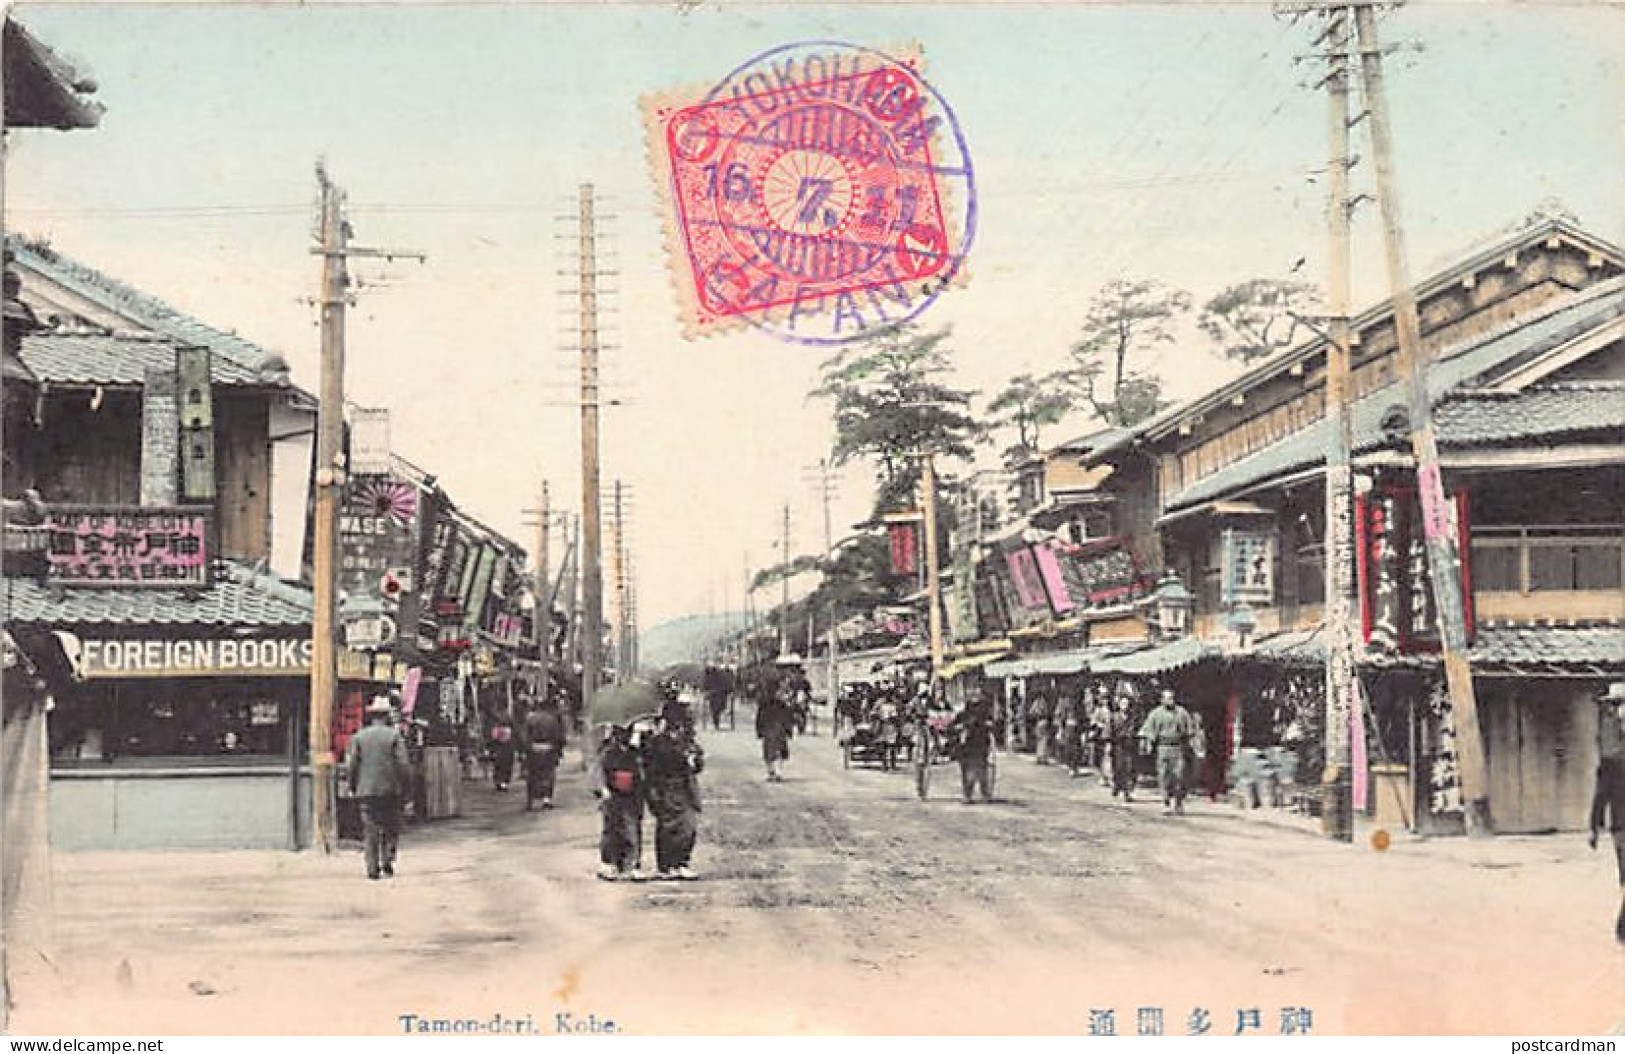 Japan - KOBE - Tamon Dori - Kobe